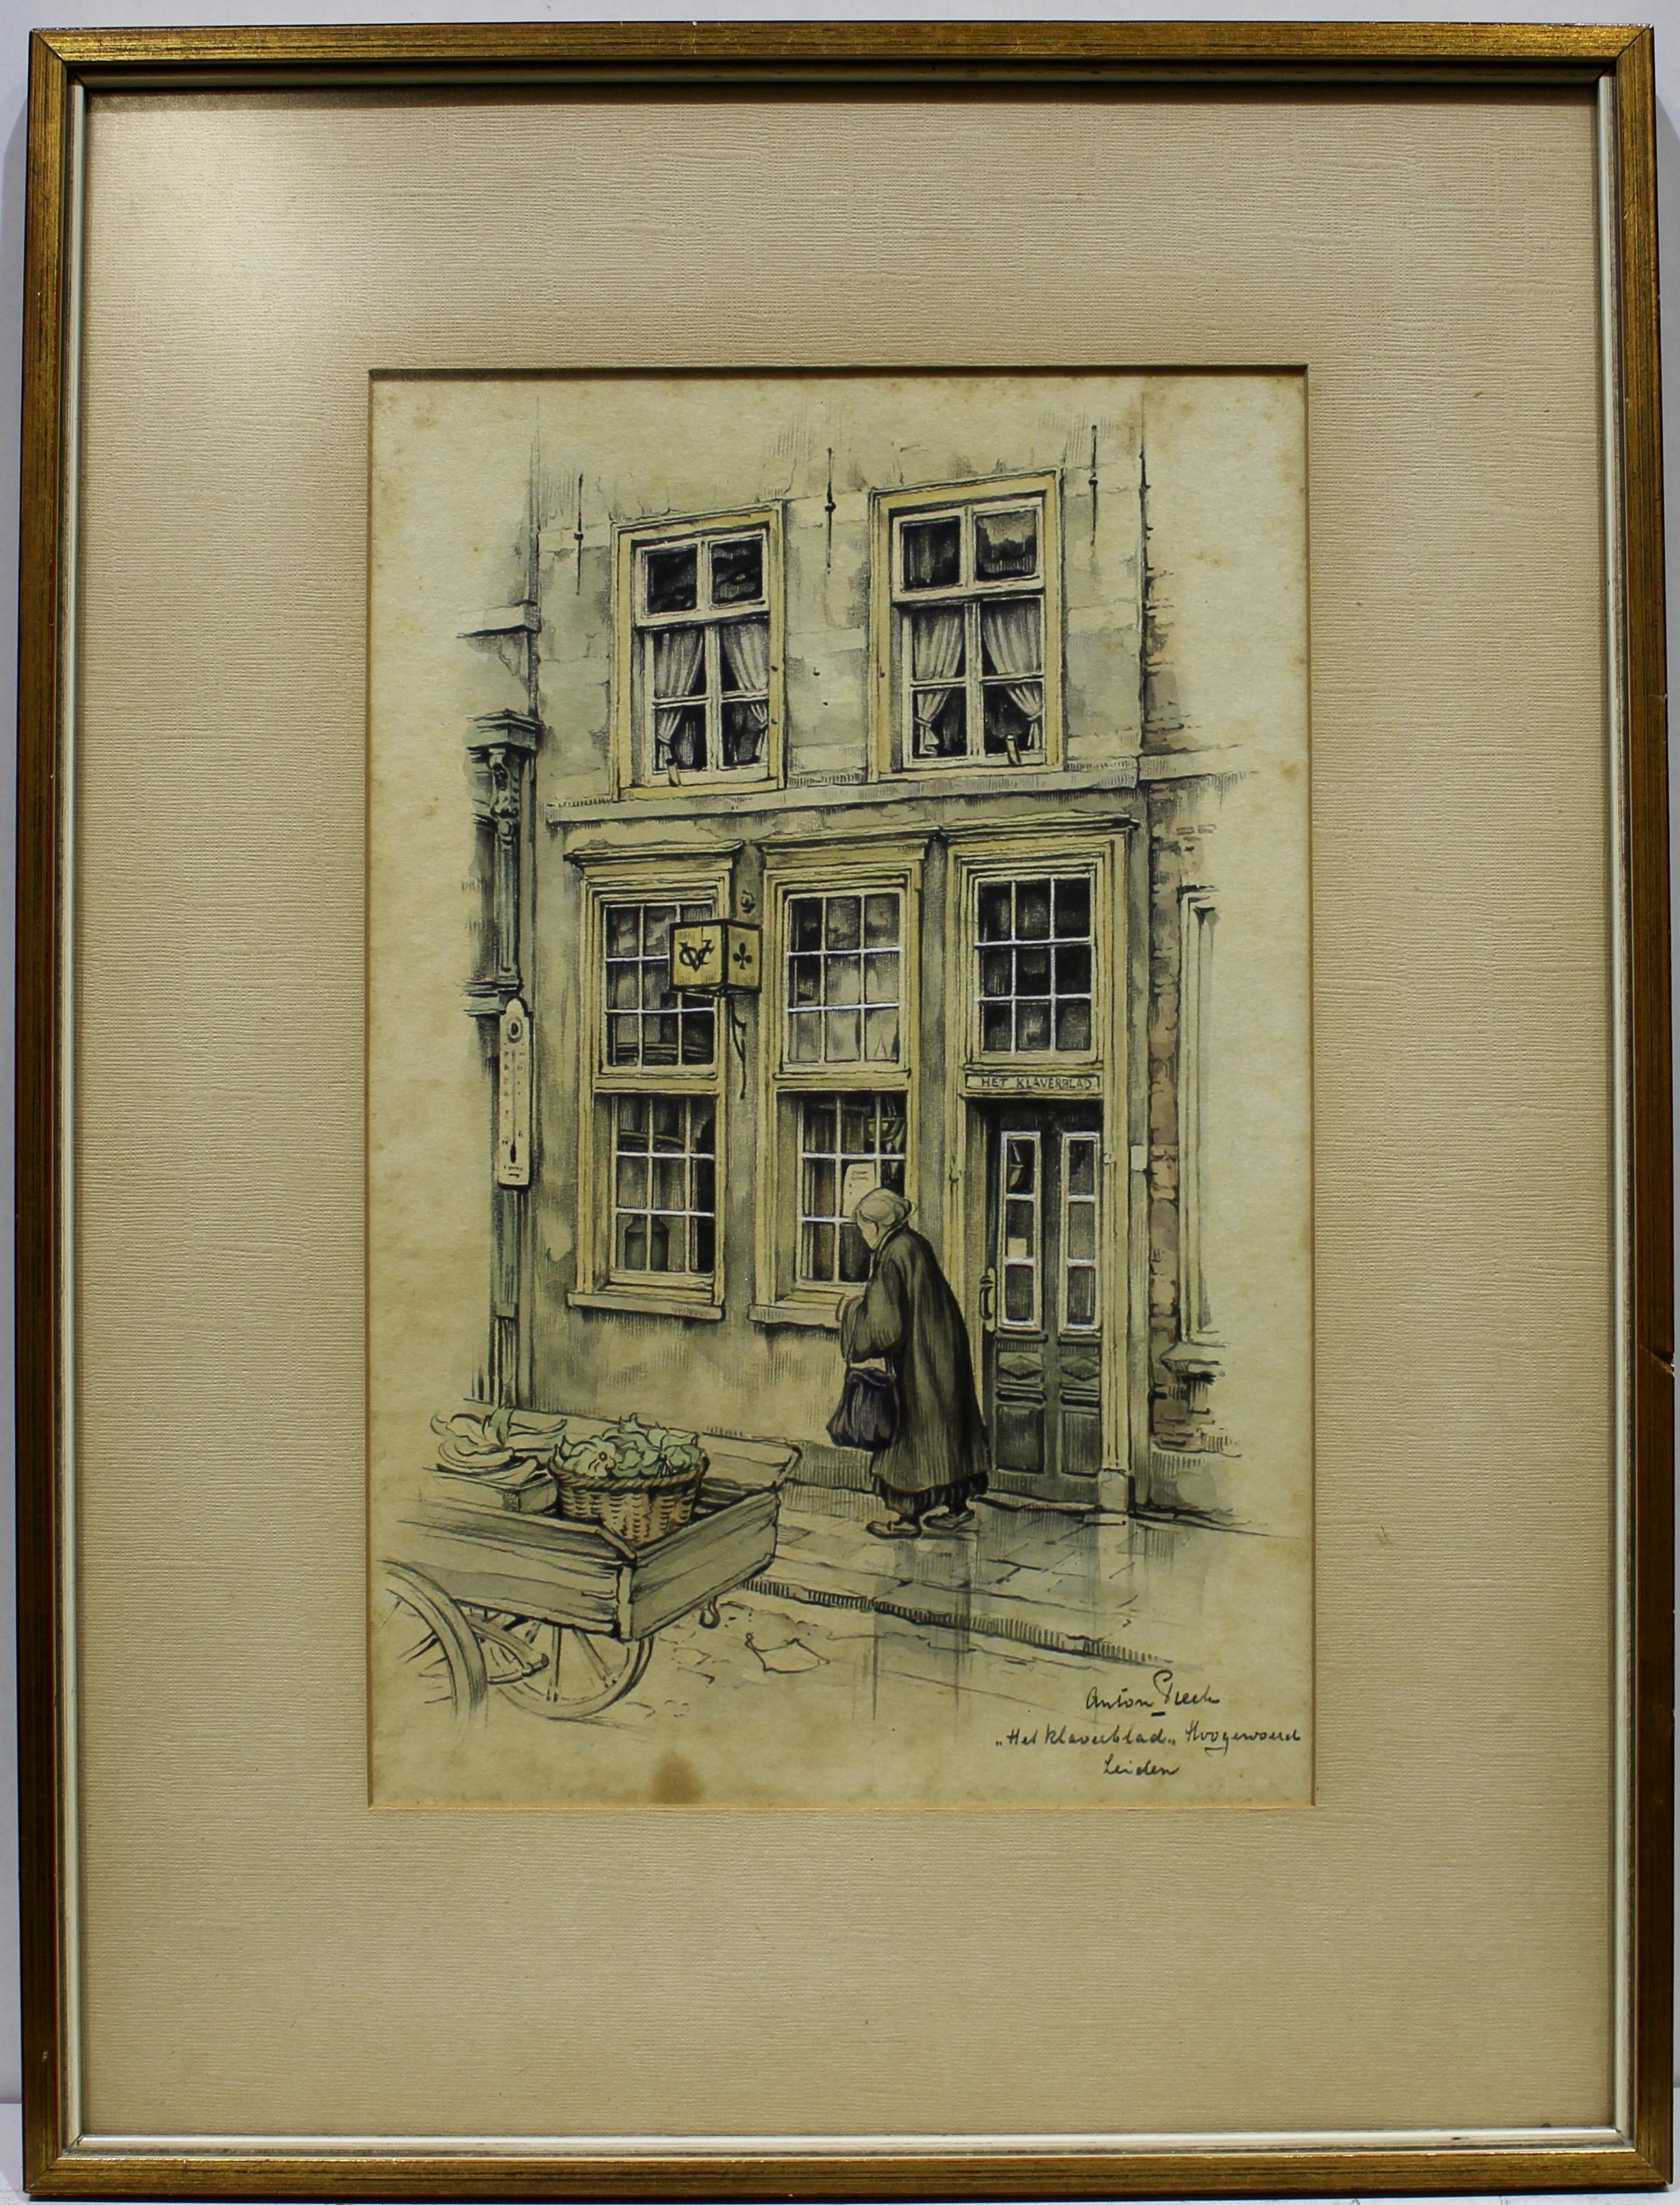 Artwork by Anton Franciscus‏ Pieck, Het klaverblad in Leiden, Made of watercolor